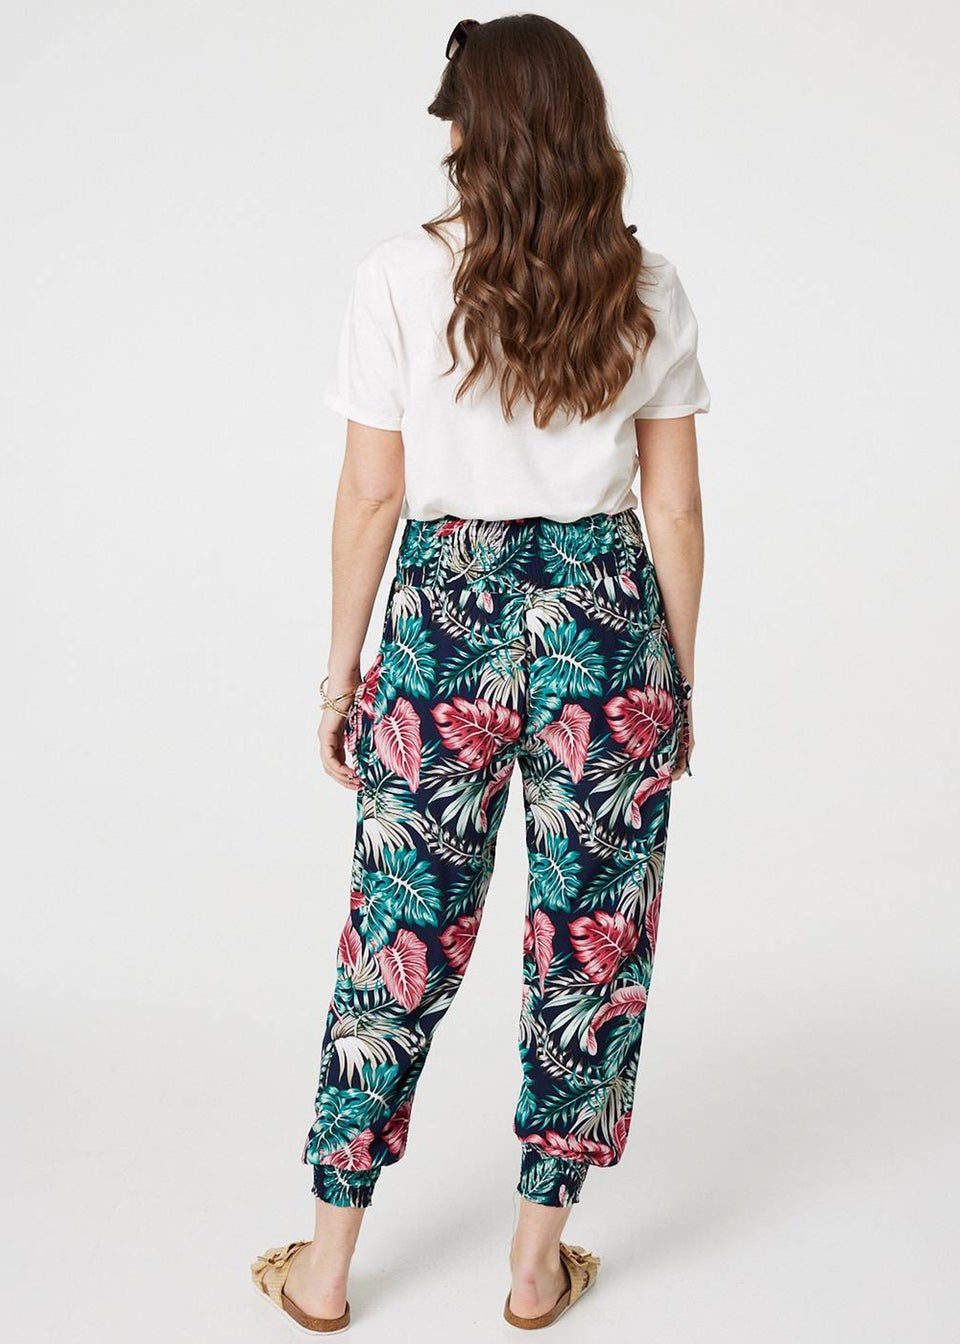 Izabel London Navy Leaf Print Harem Pants with Pockets